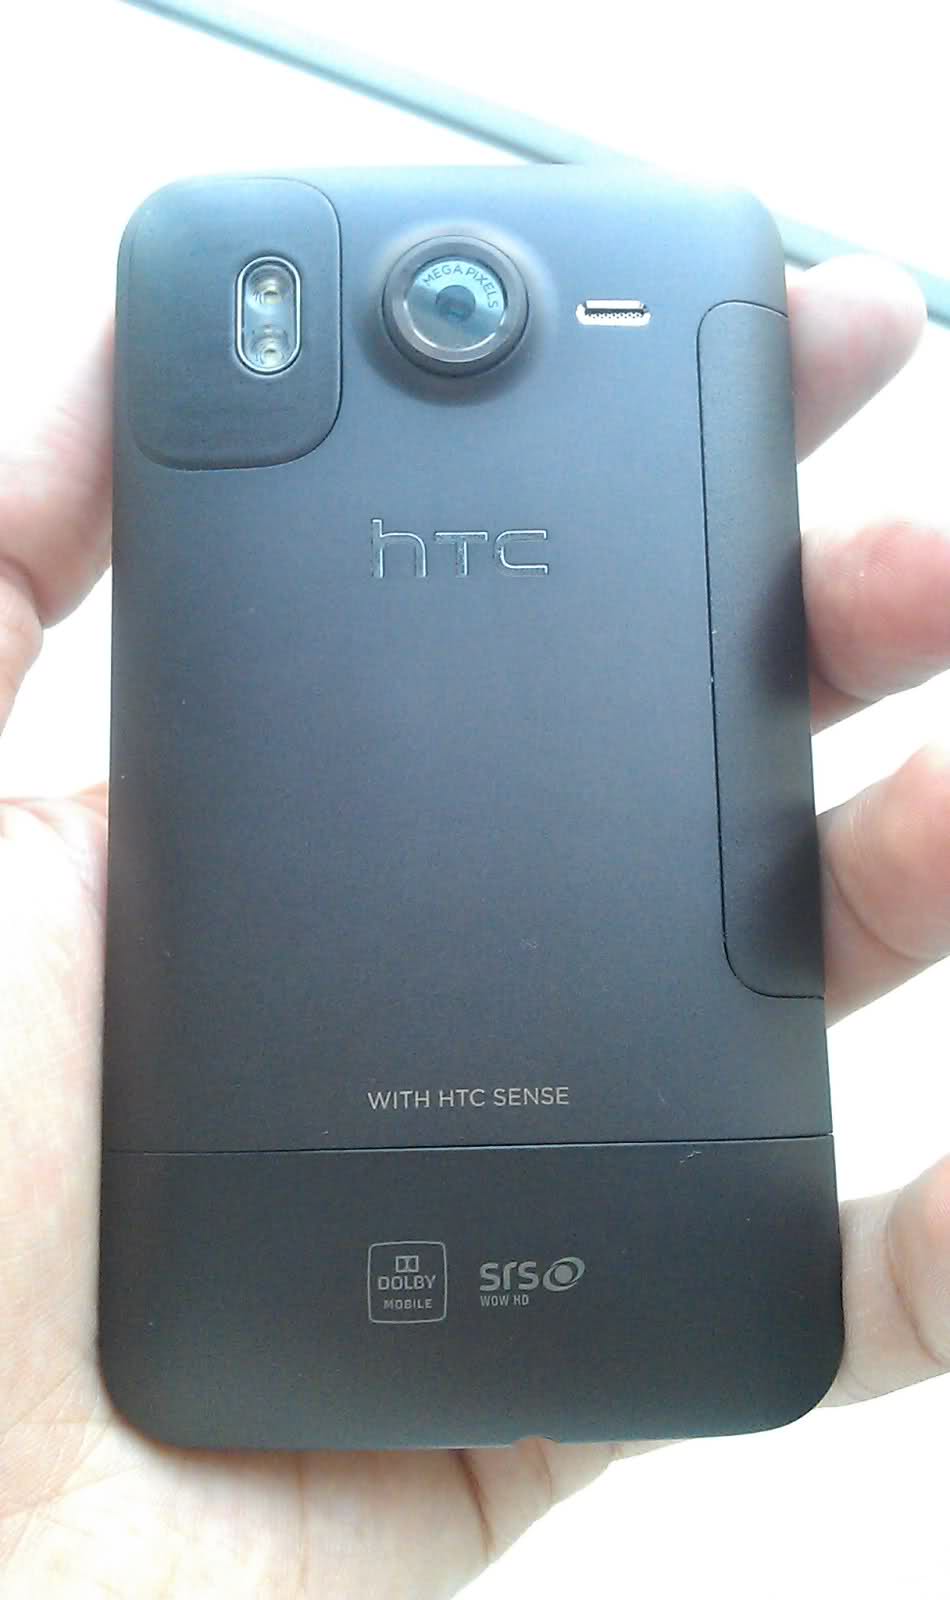  Satılık HTC Desire HD Kayıtlı Kutulu Çiziksiz 850 TL